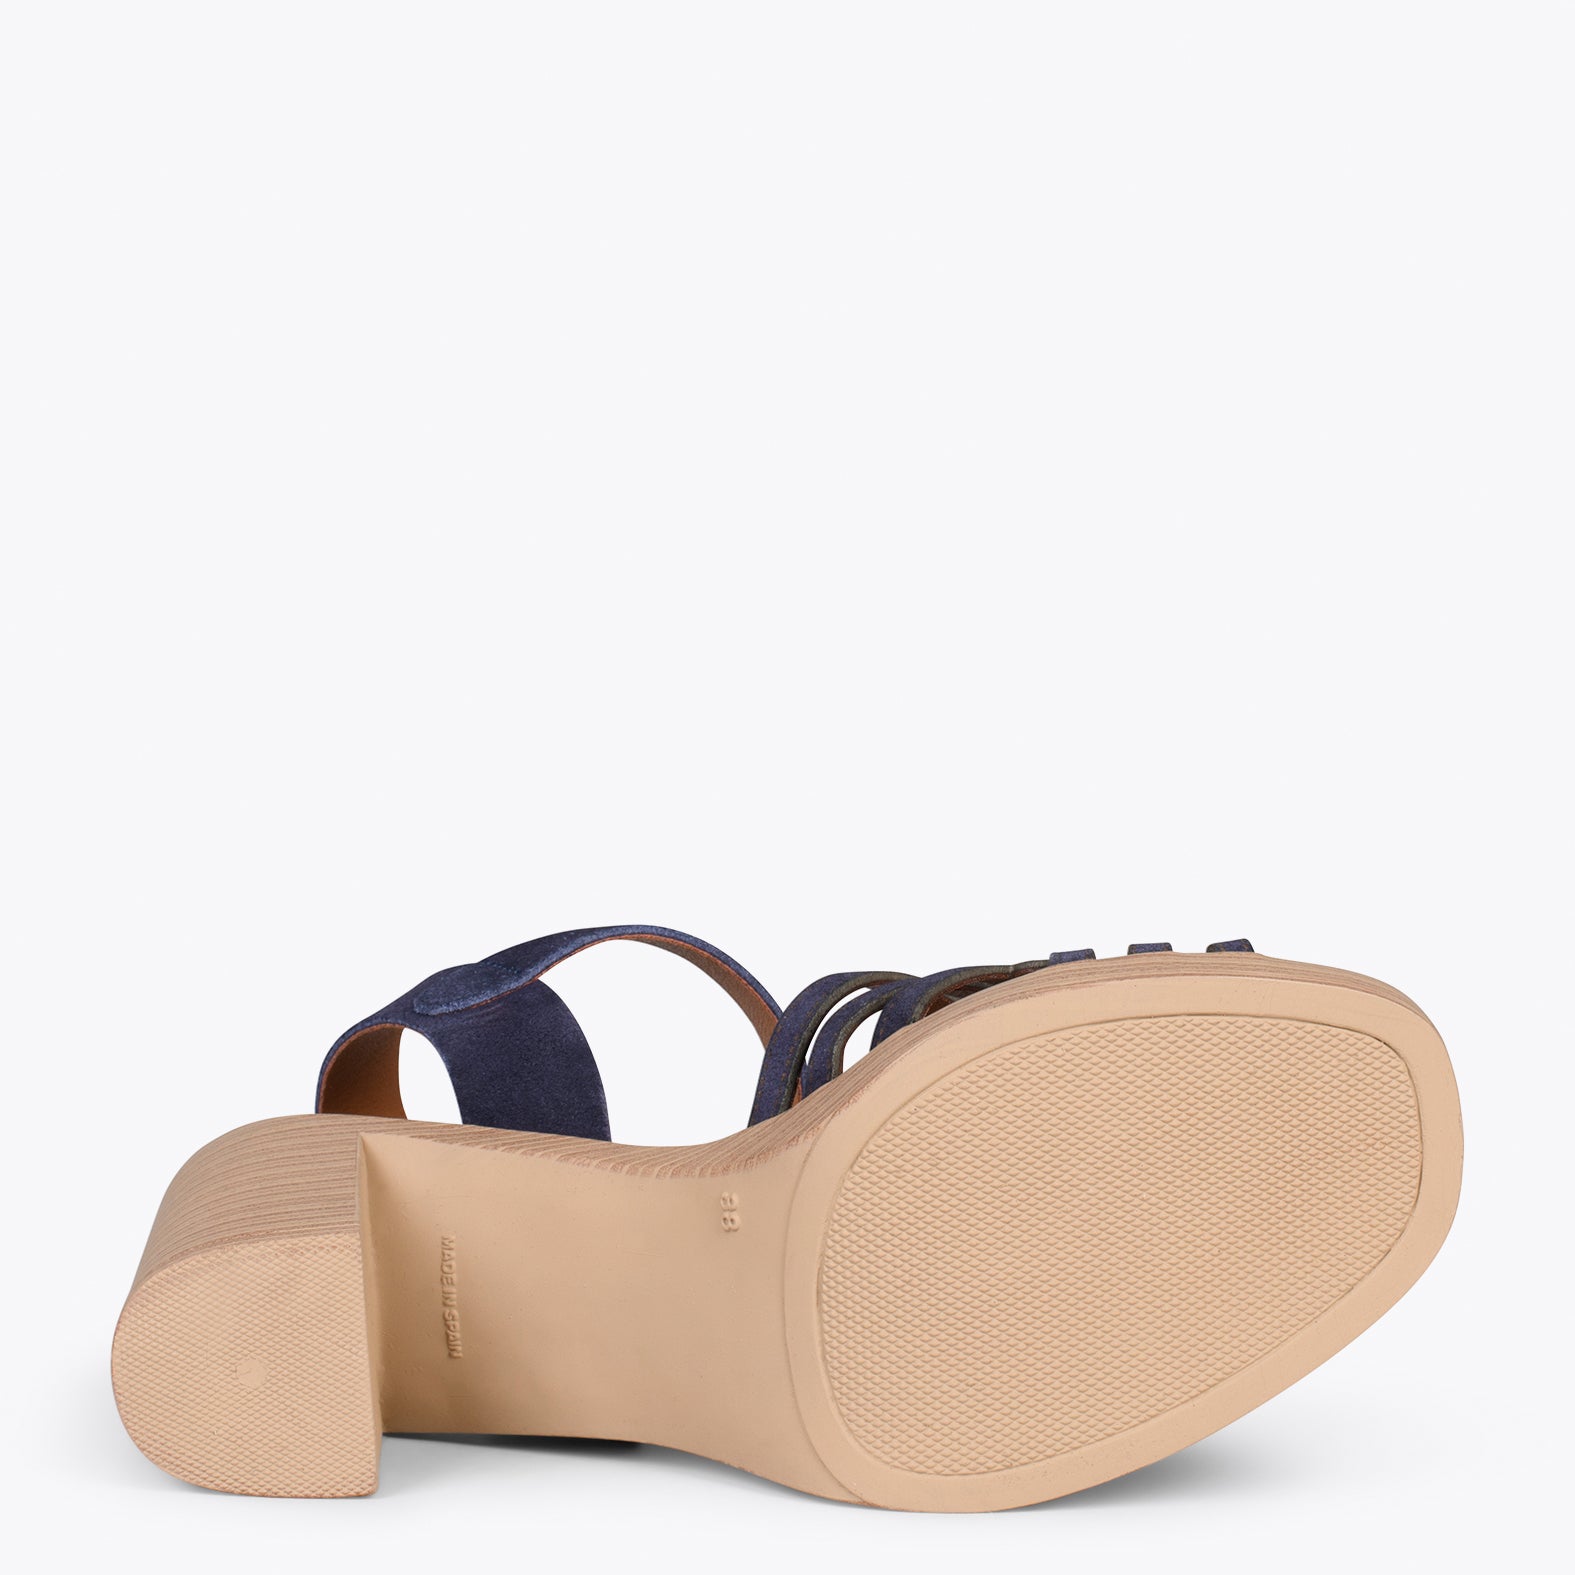 CIBELES – NAVY wooden block heel sandal